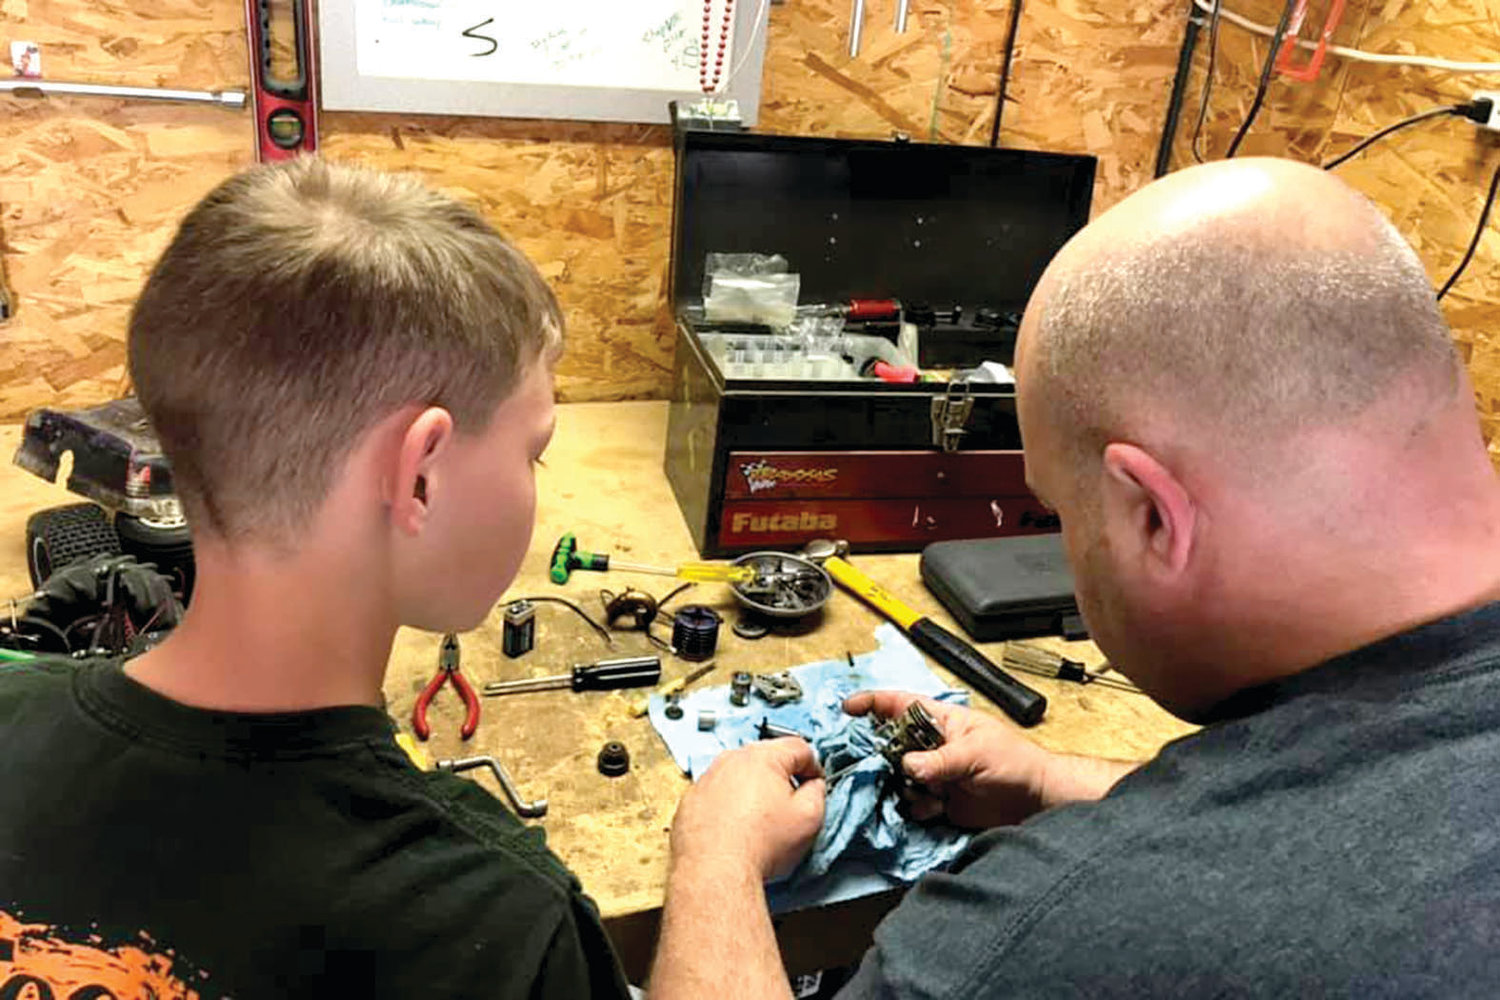 Craig Leivian teaches his son, Colton, some automotive skills while rebuilding an RC car nitro motor.